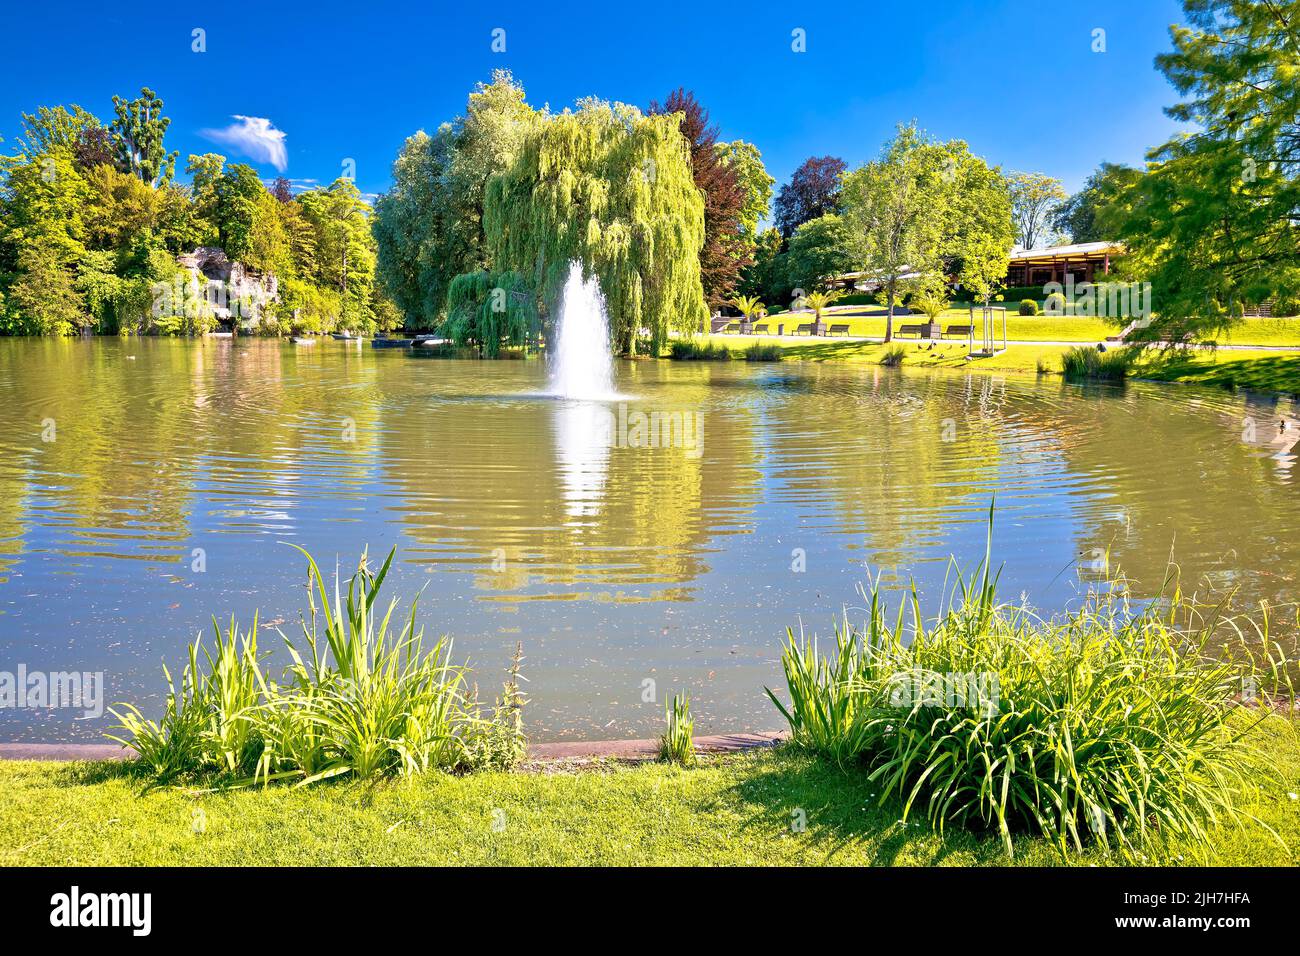 Park de la Orangerie scenic lake in Strasbourg view, Alsace region of France Stock Photo